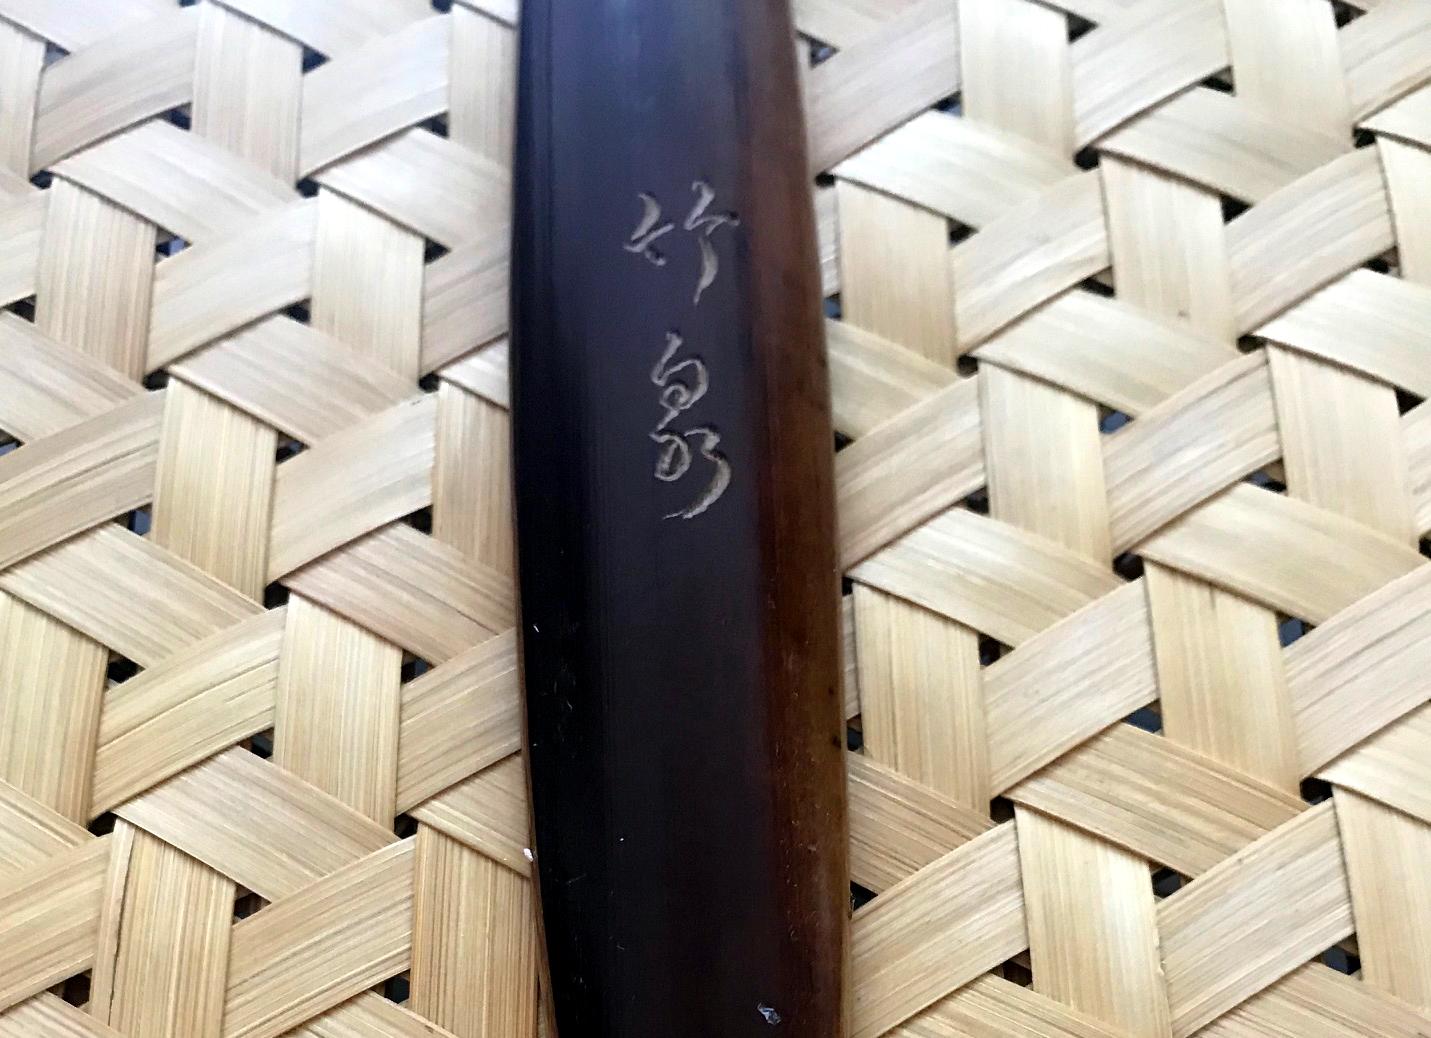 Japanese Woven Basket Bamboo Art Signed Chikusen 2